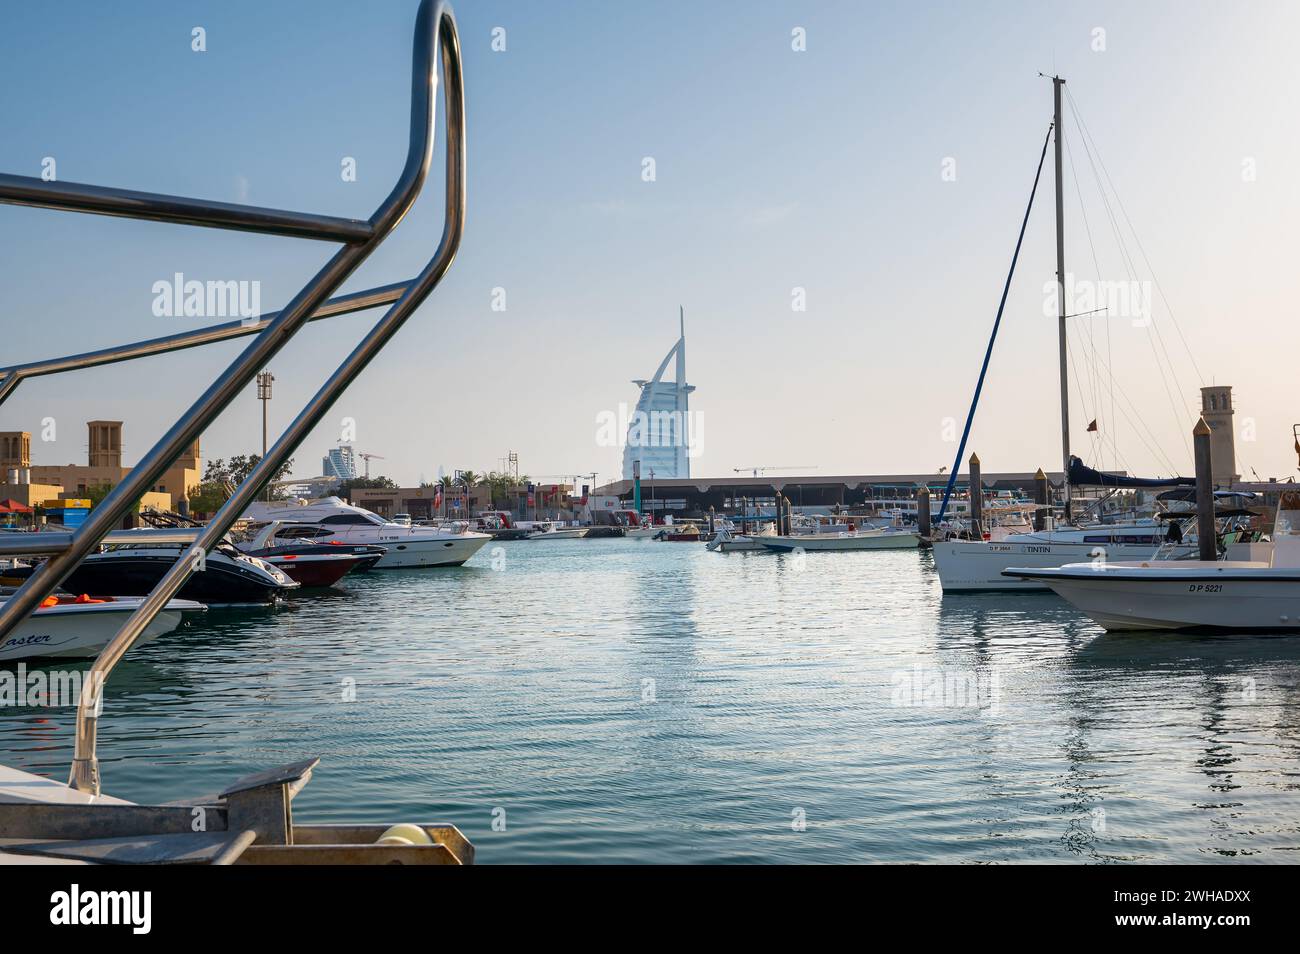 Dubai, Vereinigte Arabische Emirate - 15. April 2021: Jumeirah Marina in Dubai, mit Yachten und Booten im glitzernden Wasser in Richtung des berühmten Burj A Stockfoto